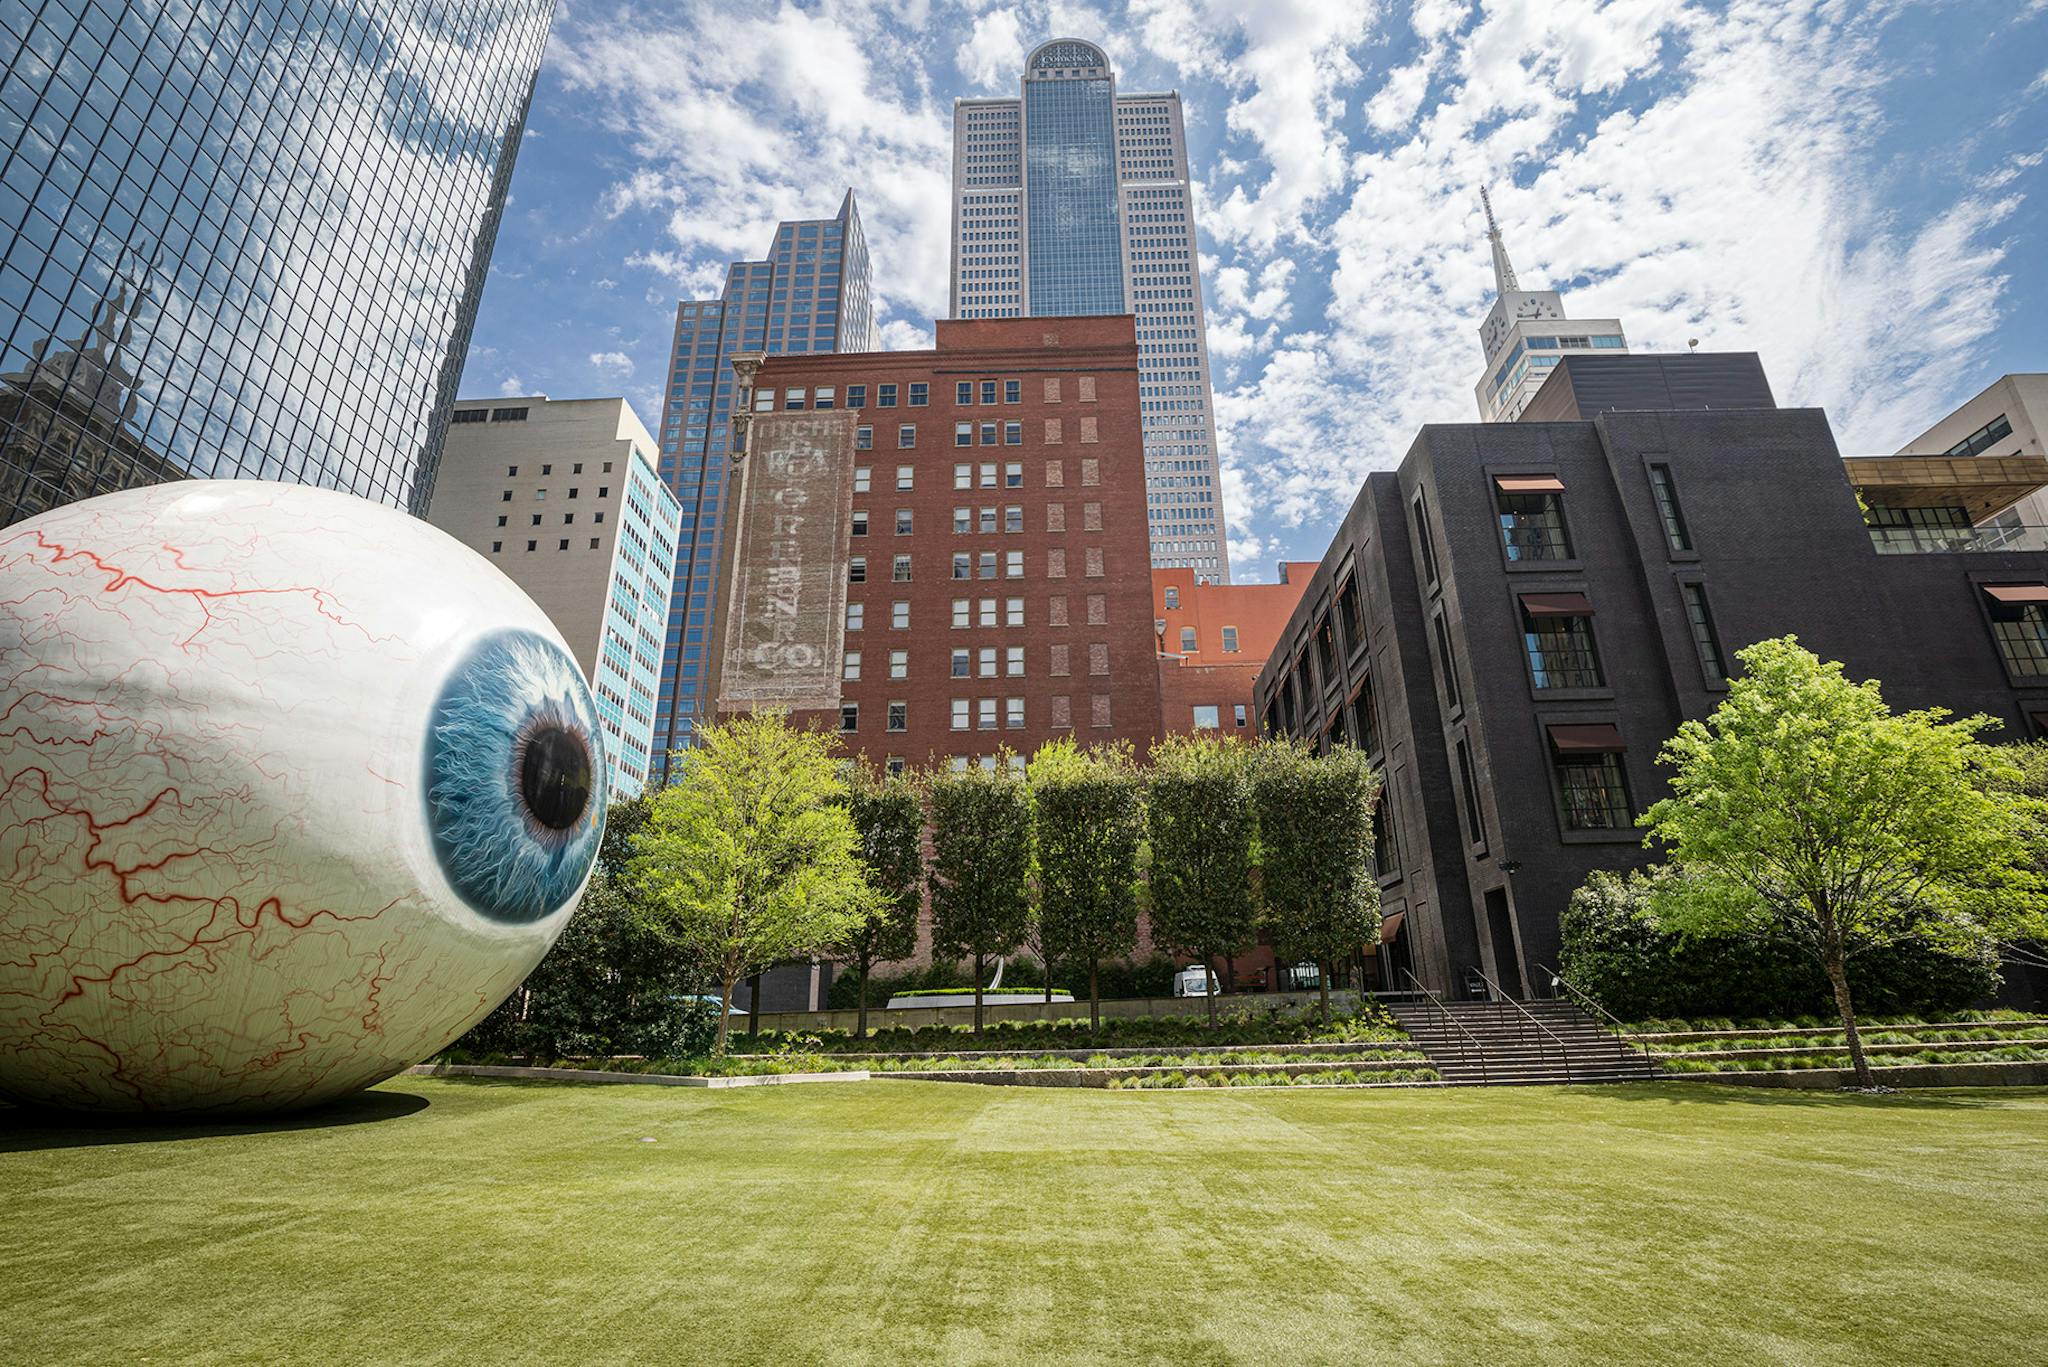 Dallas eye sculpture downtown